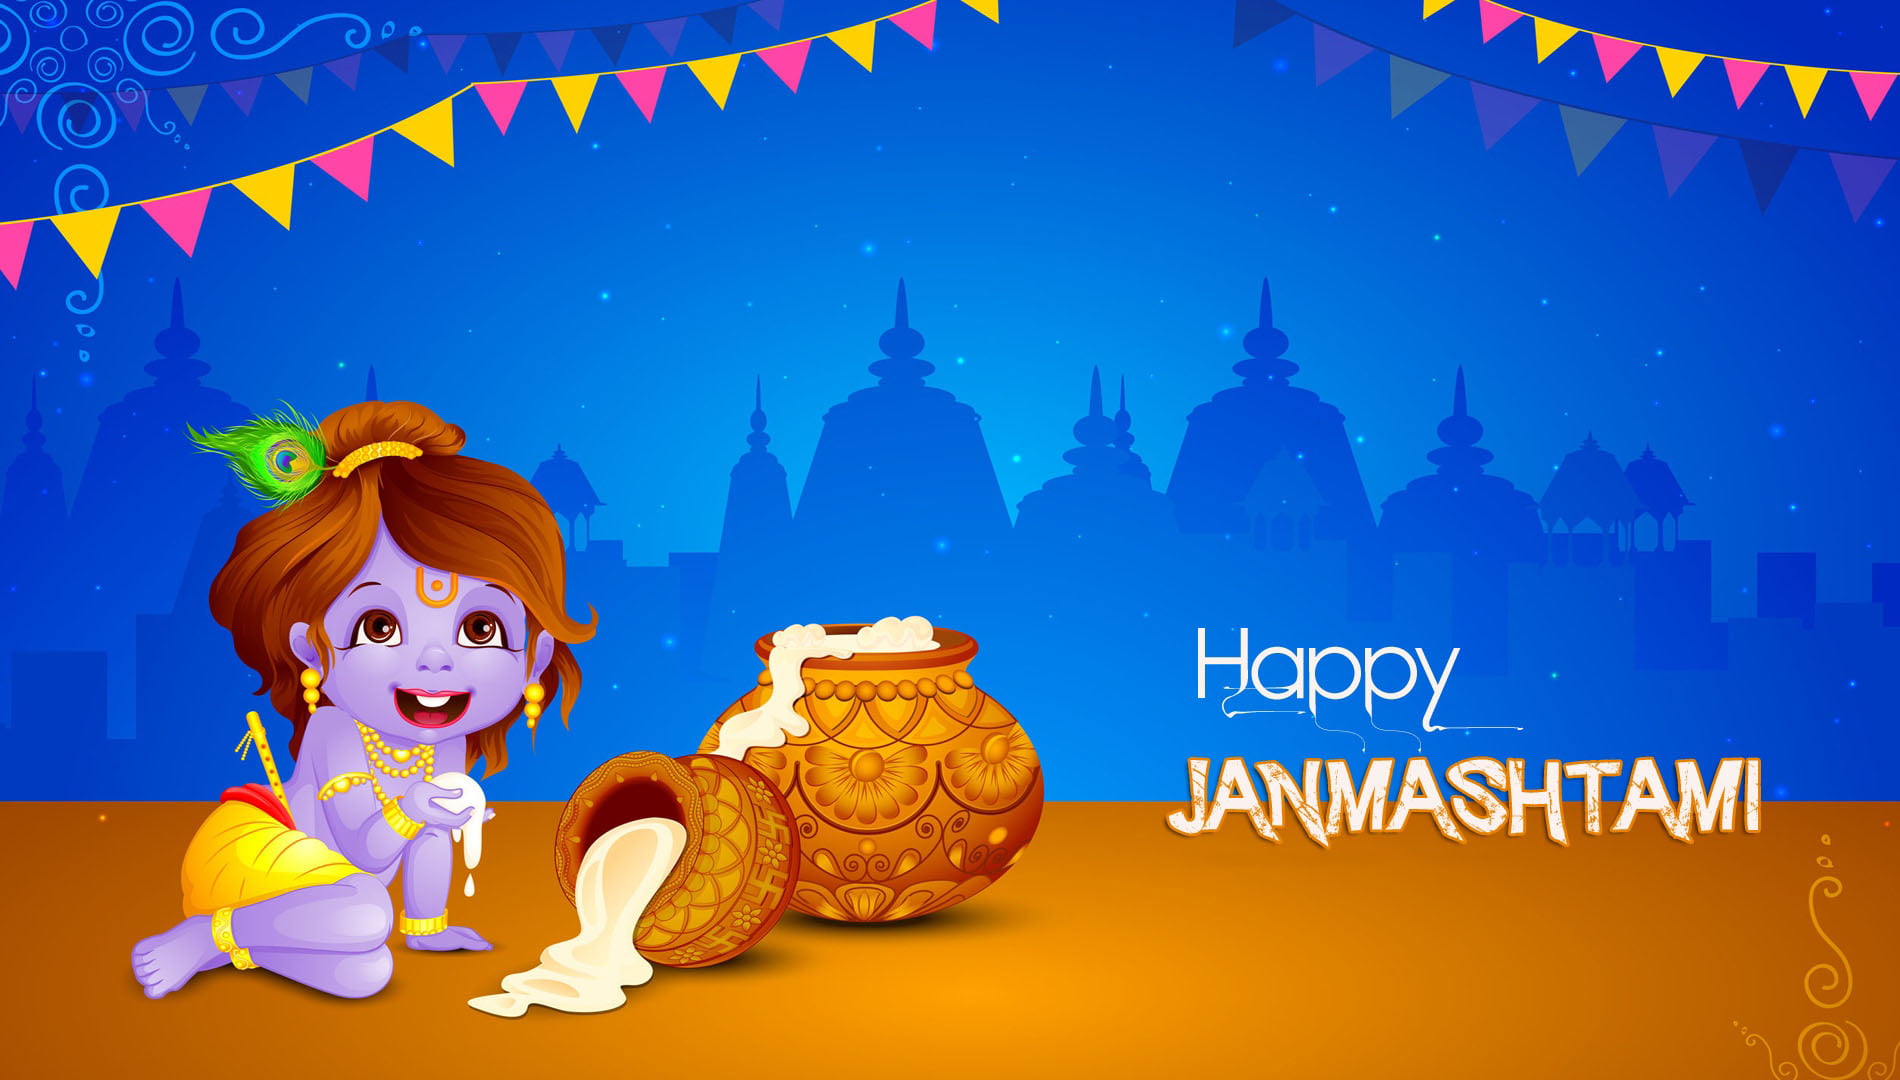 Happy Janmashtami 2016, happy Janmashtami illustration, Festivals / Holidays